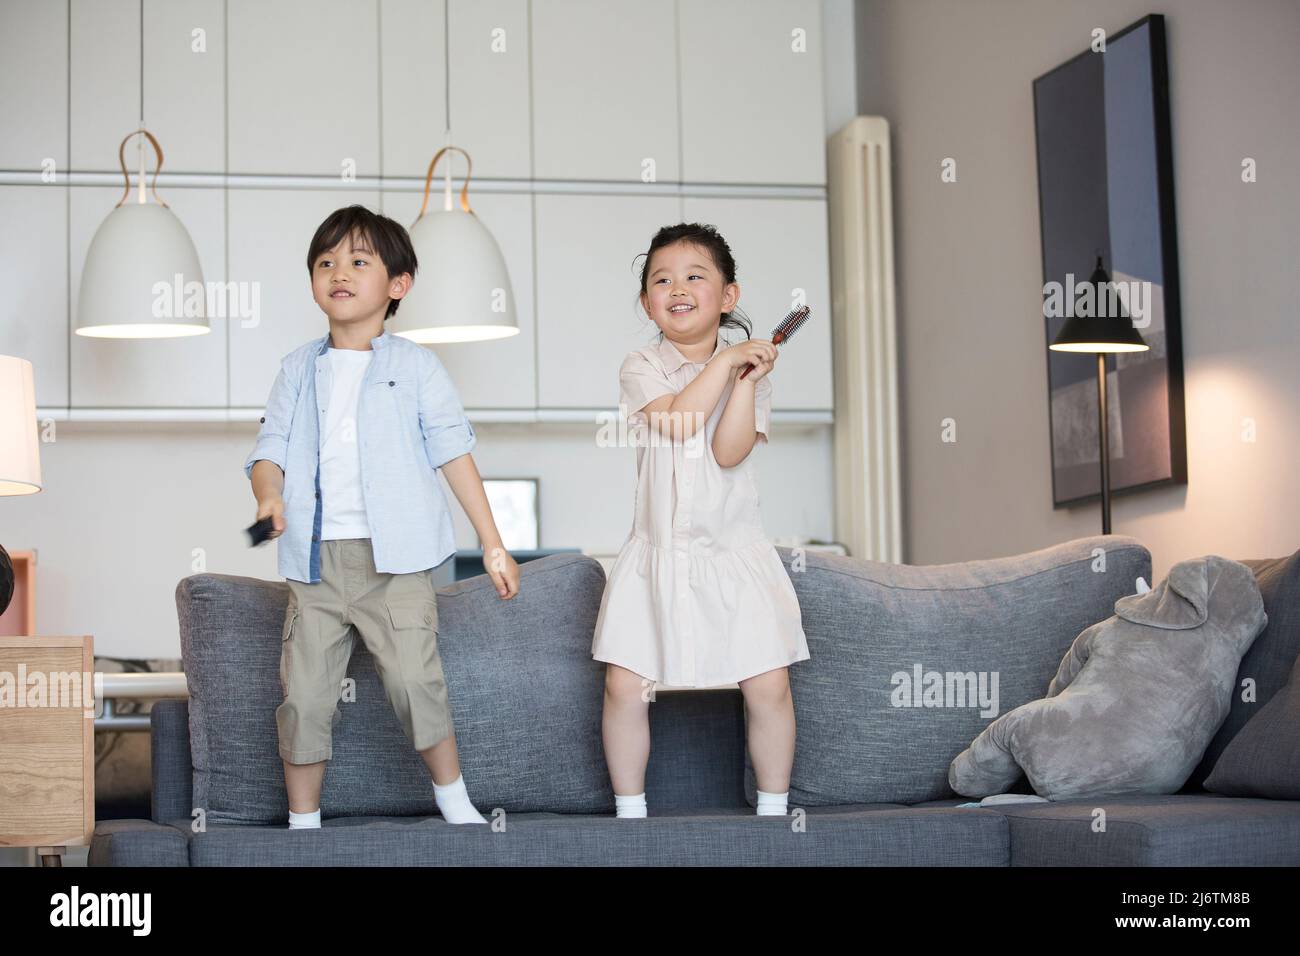 Une petite fille et un petit garçon chantant sur le canapé avec un peigne agissant comme un microphone - photo de stock Banque D'Images